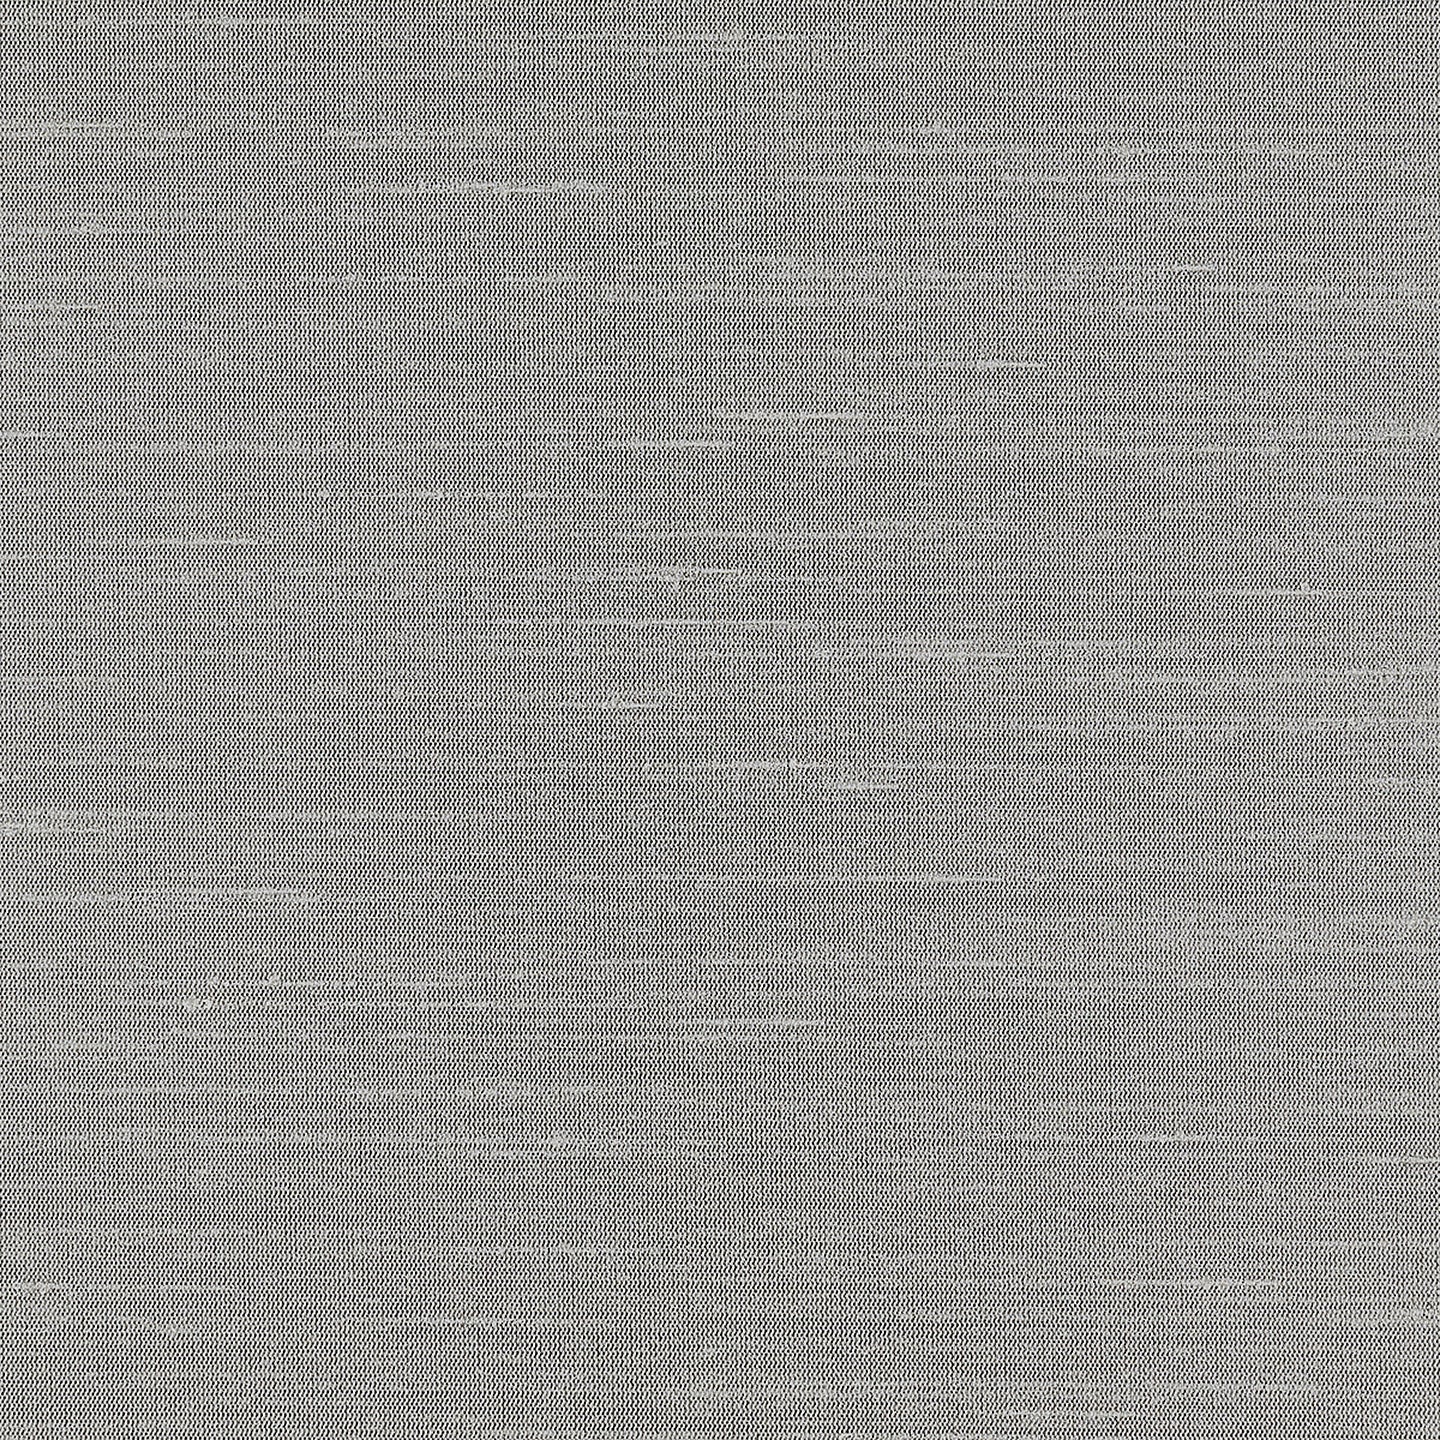 Purchase Phillip Jeffries Wallpaper - 10278, Lustrous Cloth - Silken Ash 